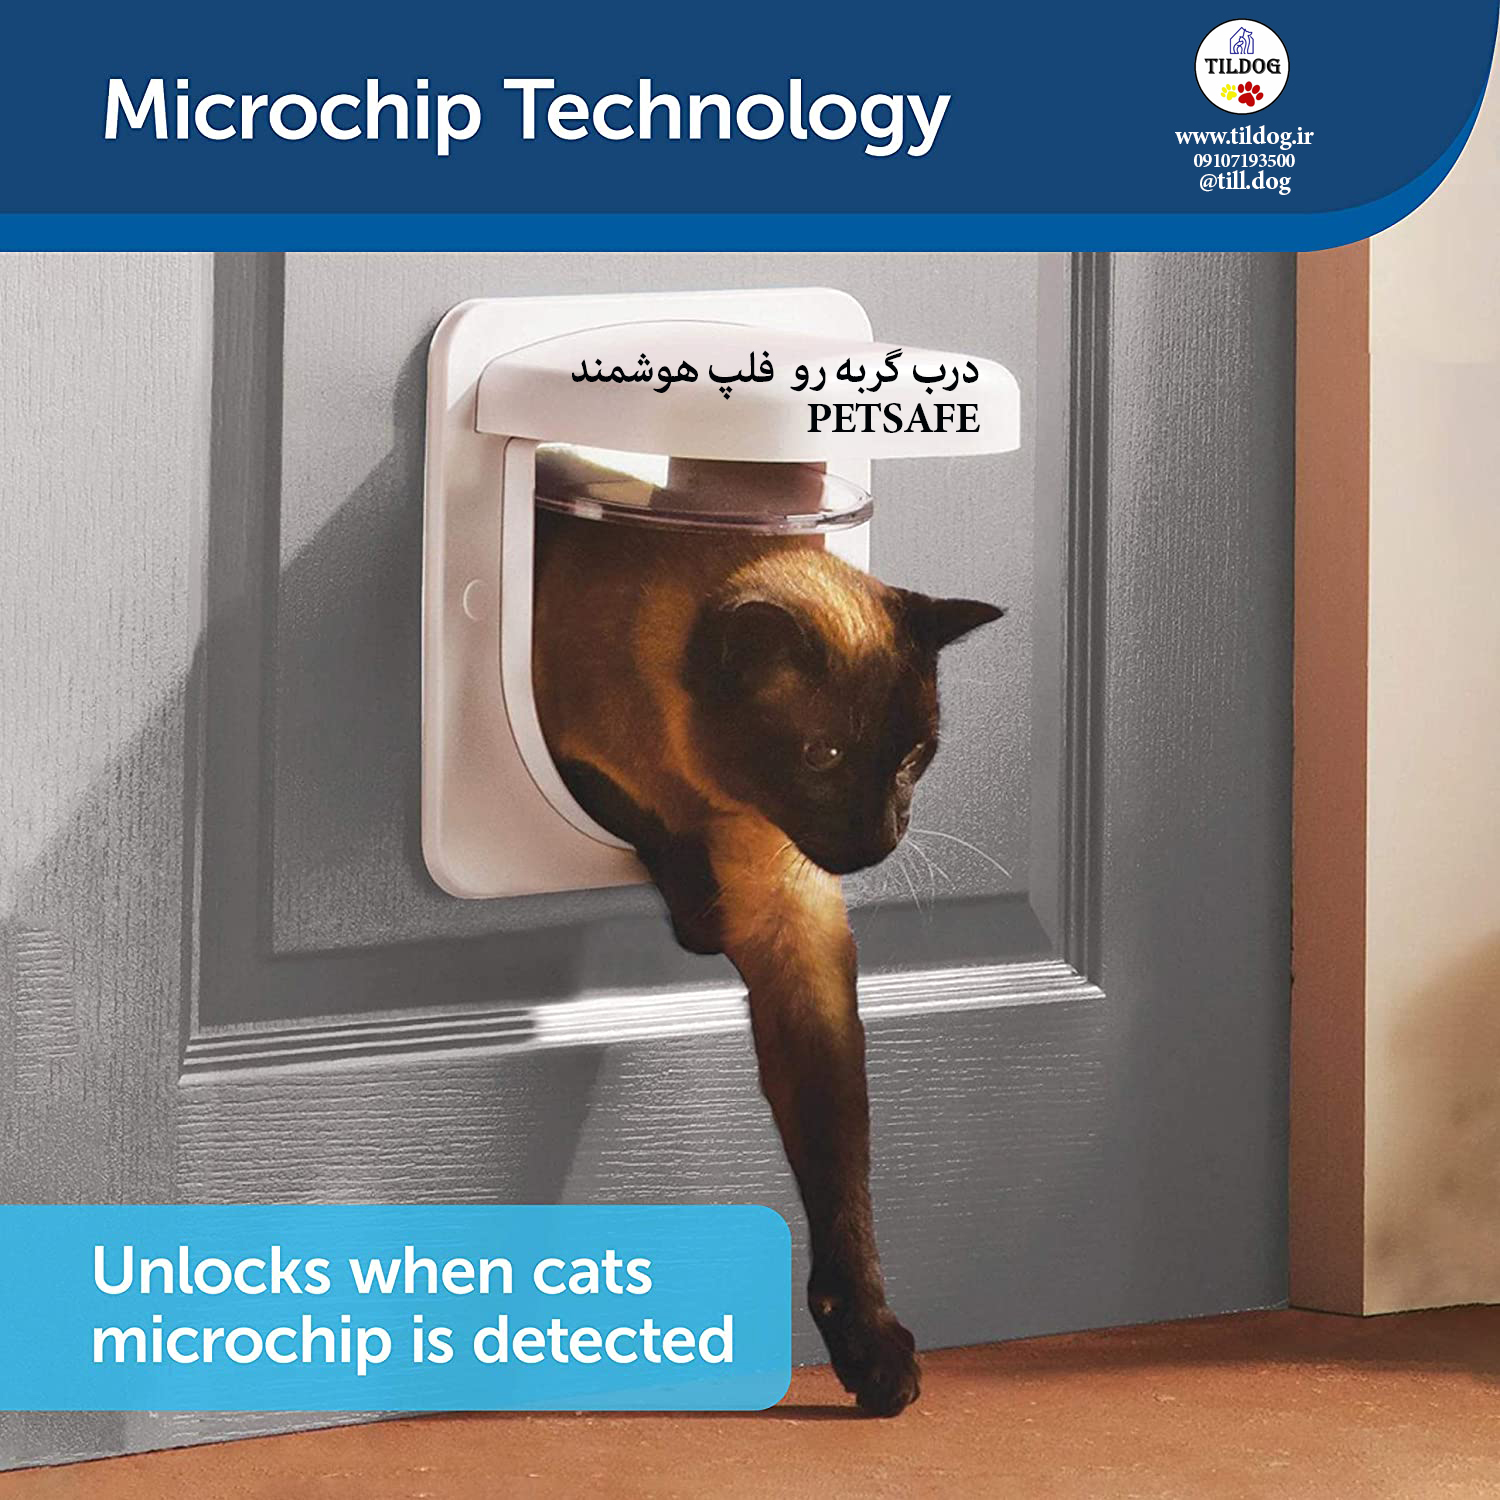 فلپ هوشمند Petporte  میکروچیپ  به گونه ای طراحی شده است که به حیوانات شما امکان دسترسی آسان به دنیای بیرون را می دهد